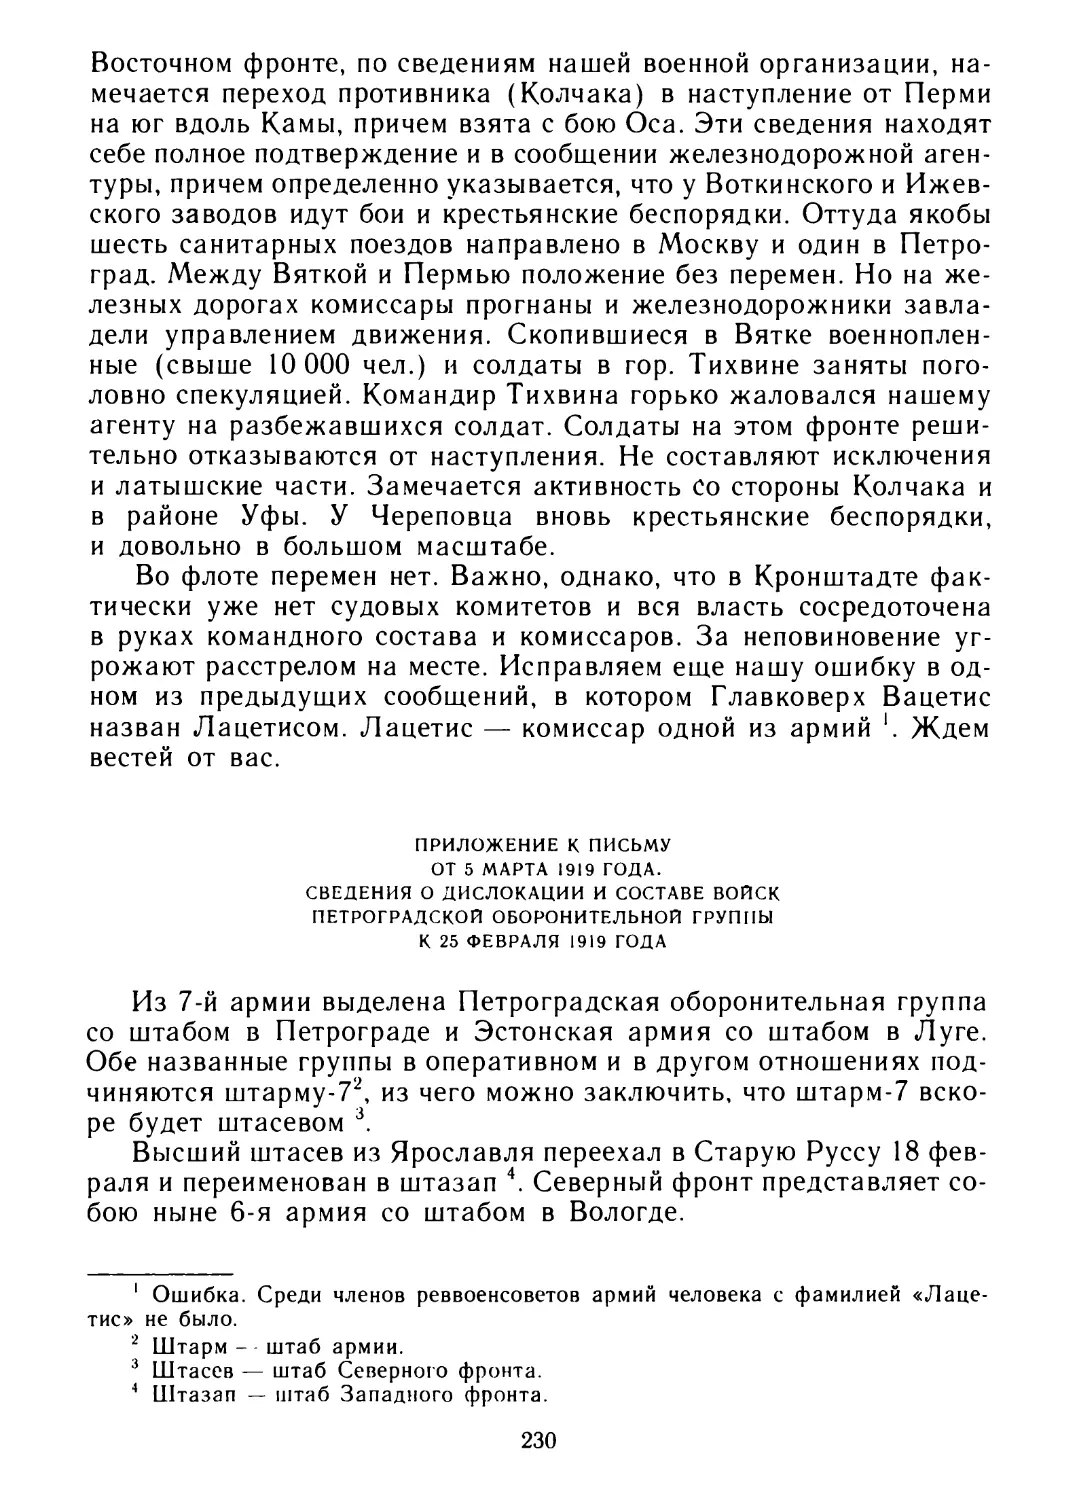 Приложение к письму от 5 марта 1919 года. Сведения о дислокации и составе войск Петроградской оборонительной группы к 25 февраля 1919 года